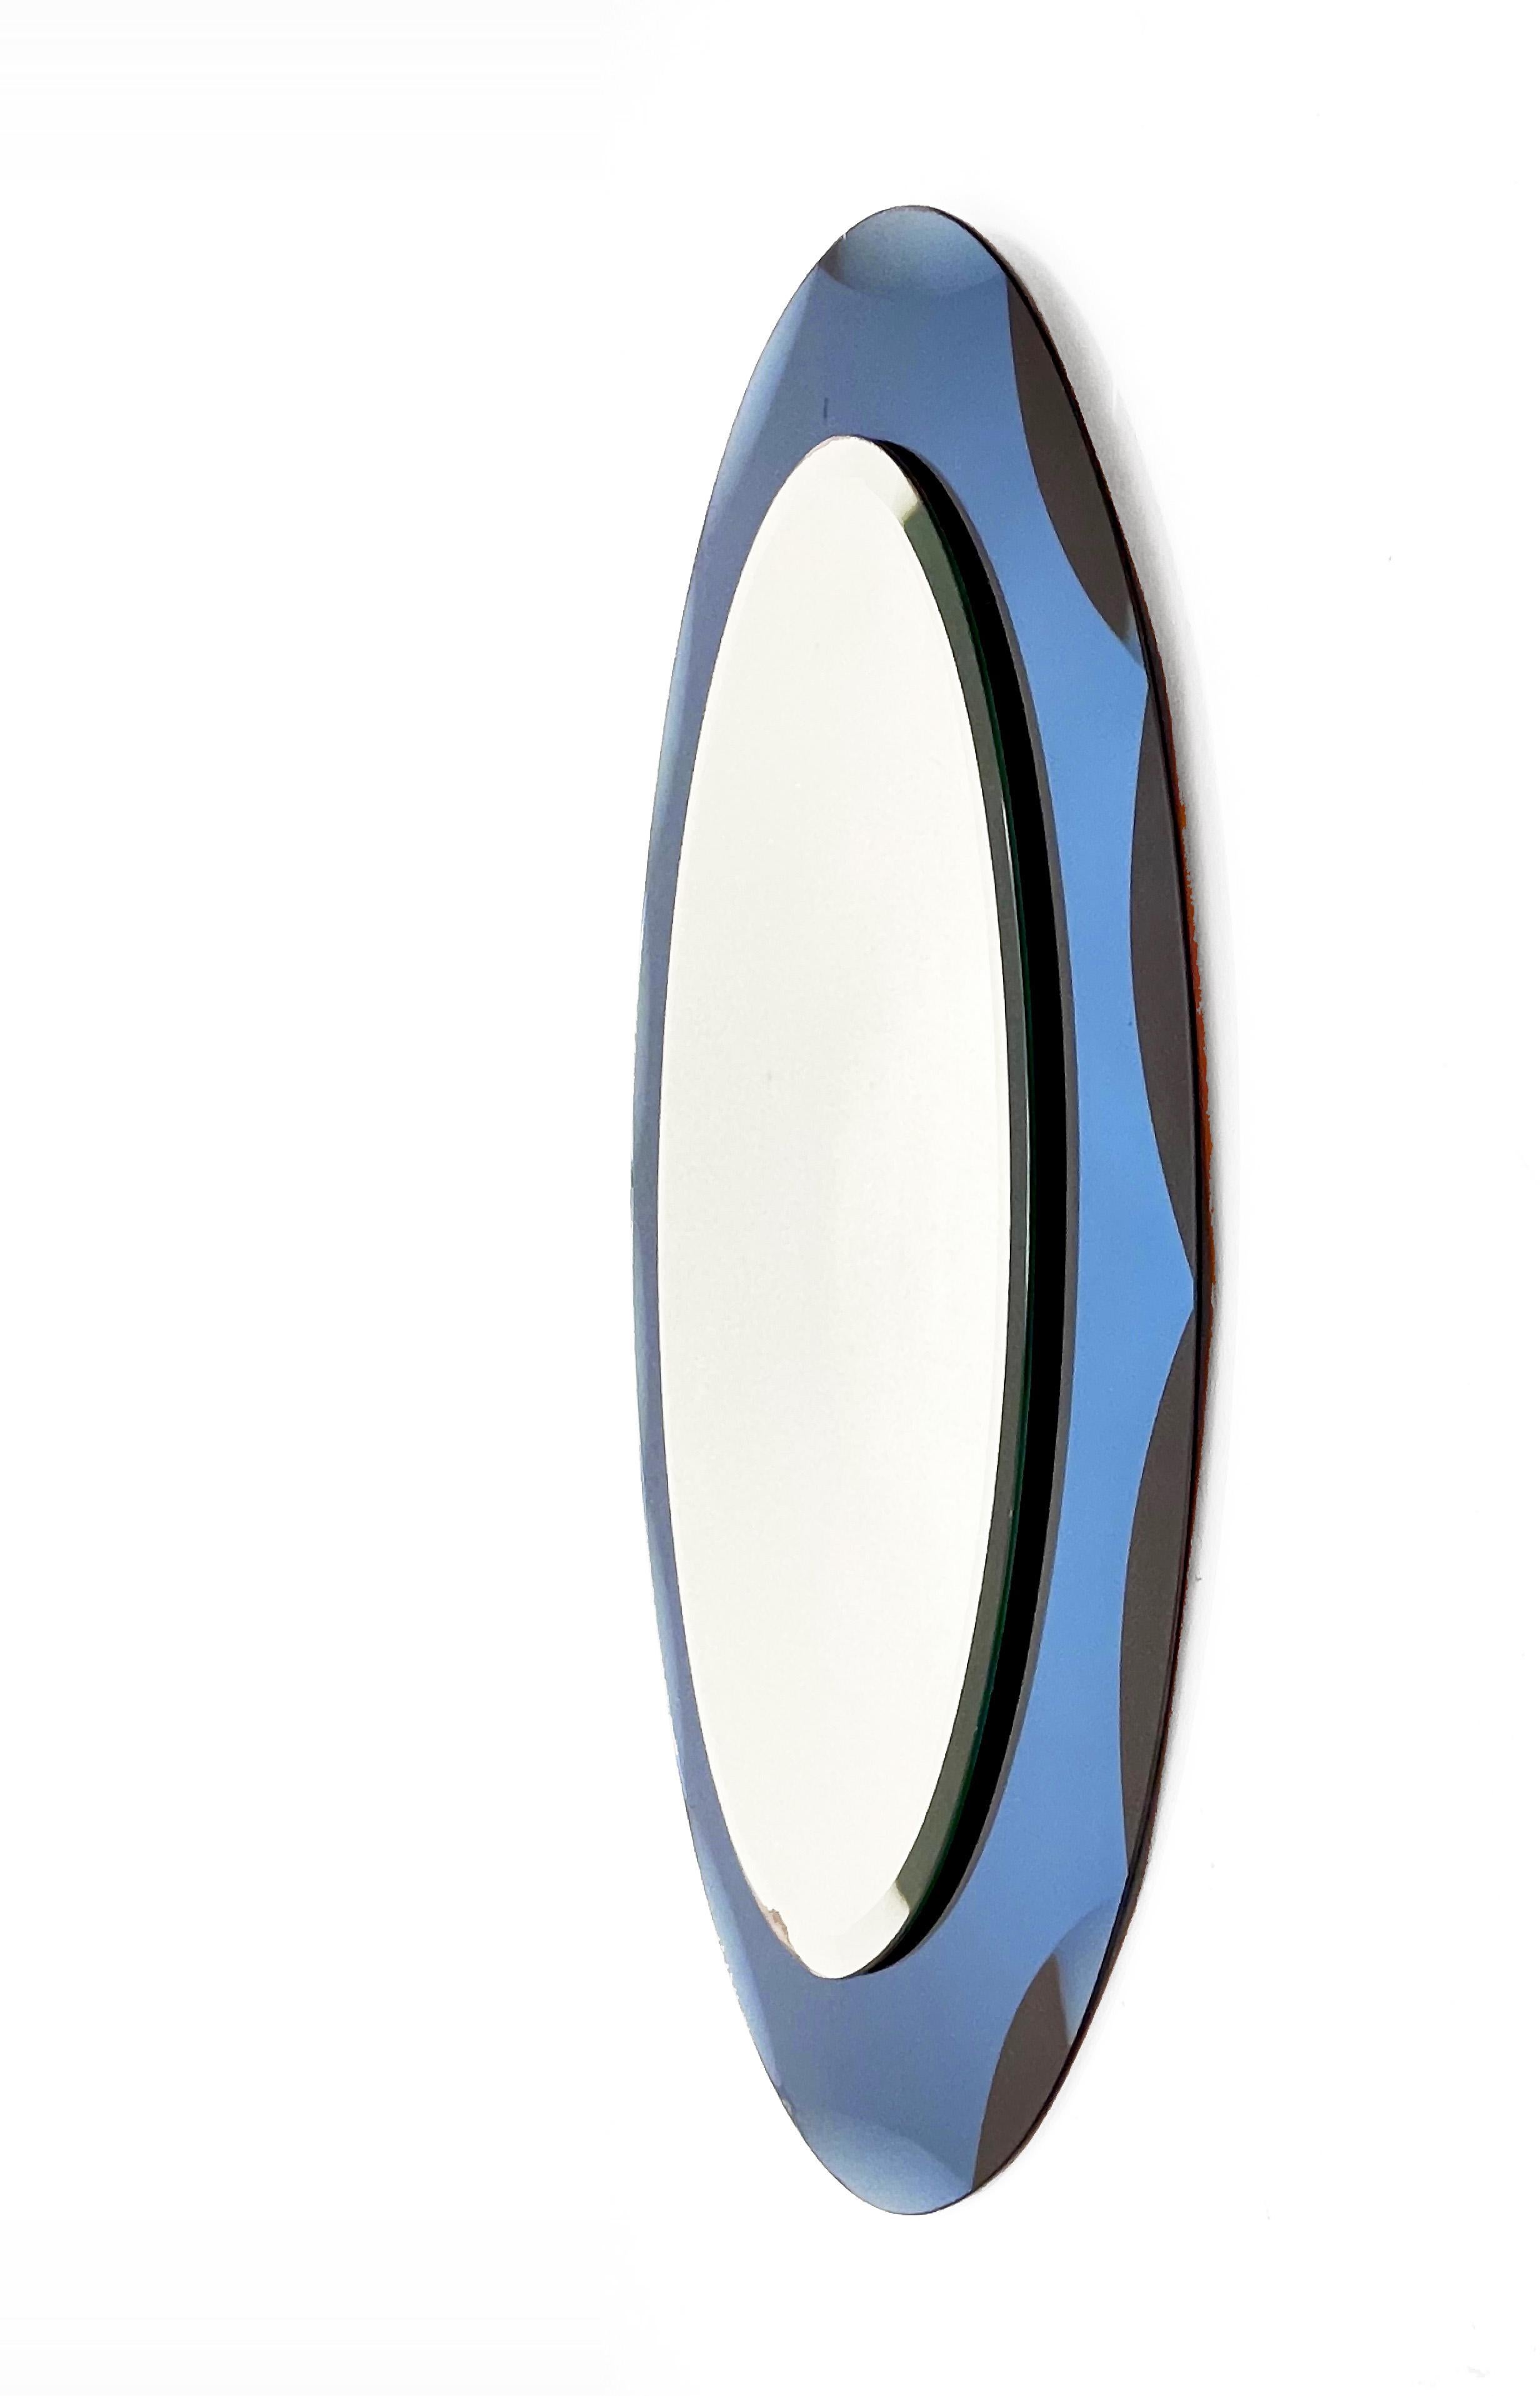 Schöner ovaler Spiegel aus der Mitte des Jahrhunderts mit blauem, geschnitztem Rahmen. Dieser italienische Spiegel ist im Stil von Cristal Arte gehalten und wurde in den 1960er Jahren in Italien entworfen.

Dieses Stück ist ein Beispiel für eine